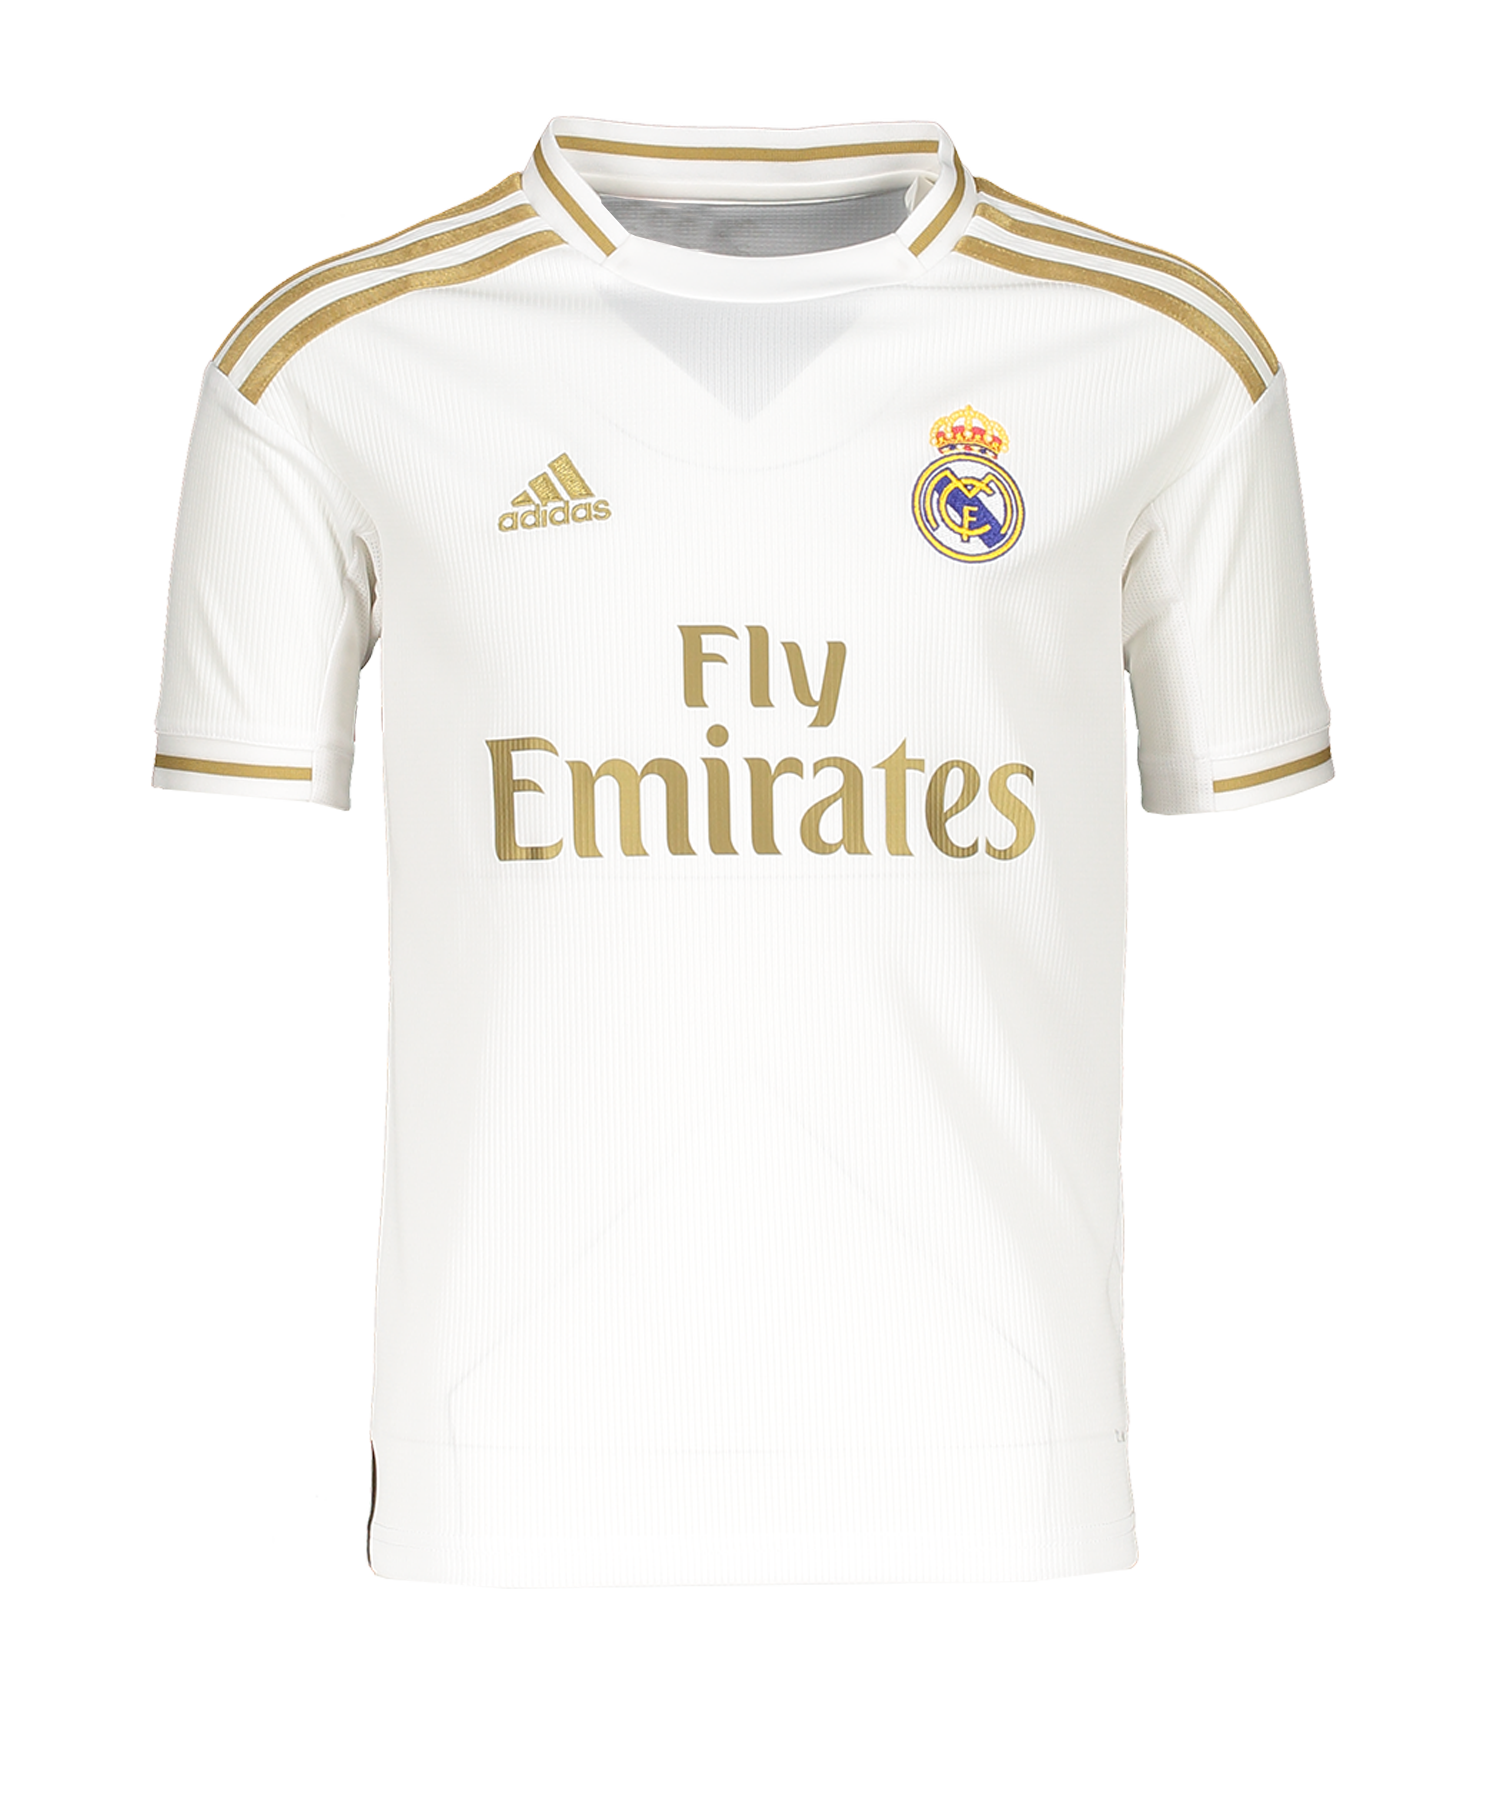 Kalmte Uitbarsten oud adidas Real Madrid Shirt Home 2019/2020 Kids - White